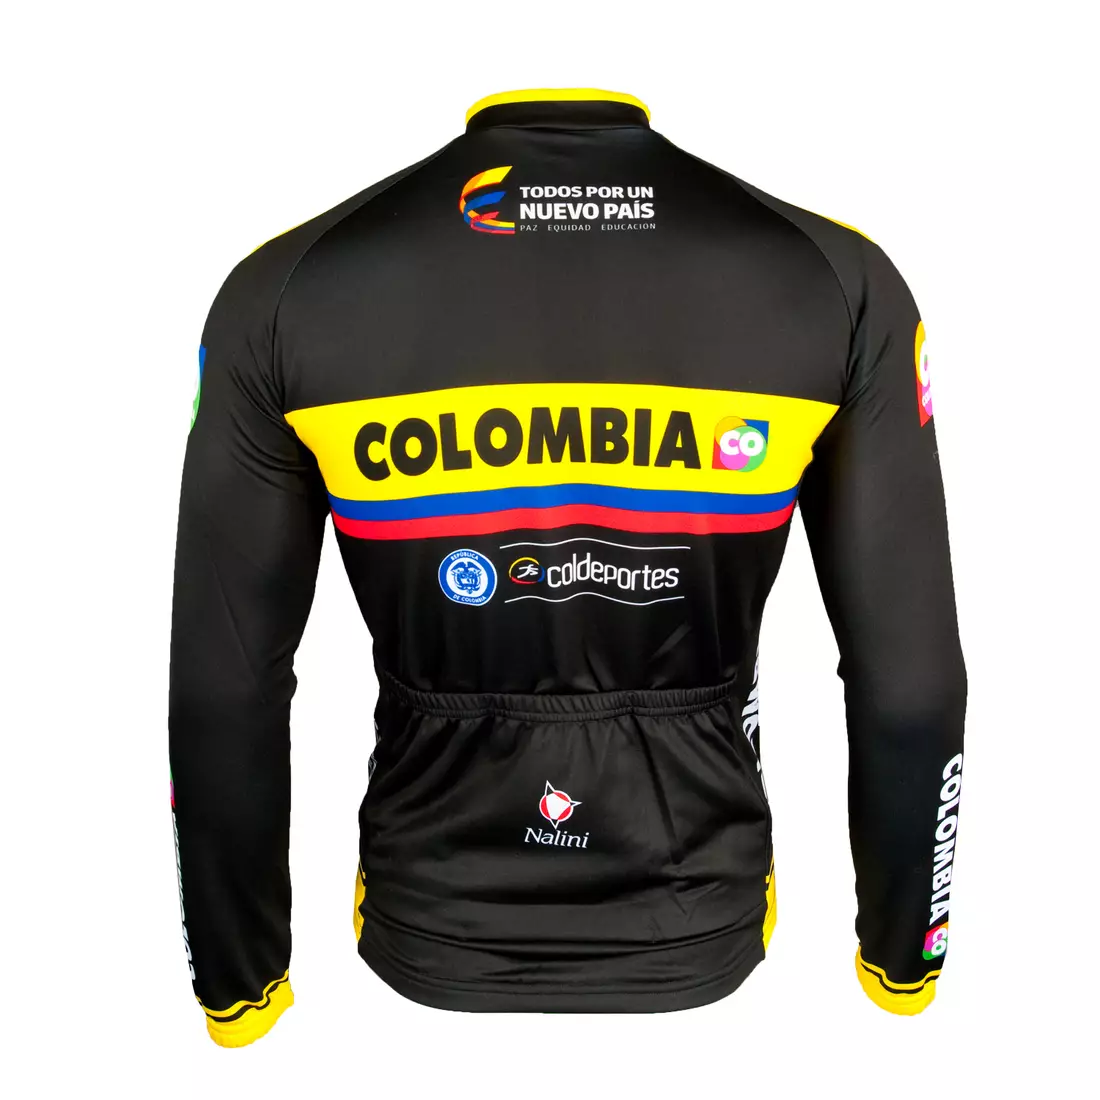 Cyklistická mikina COLOMBIA 2015